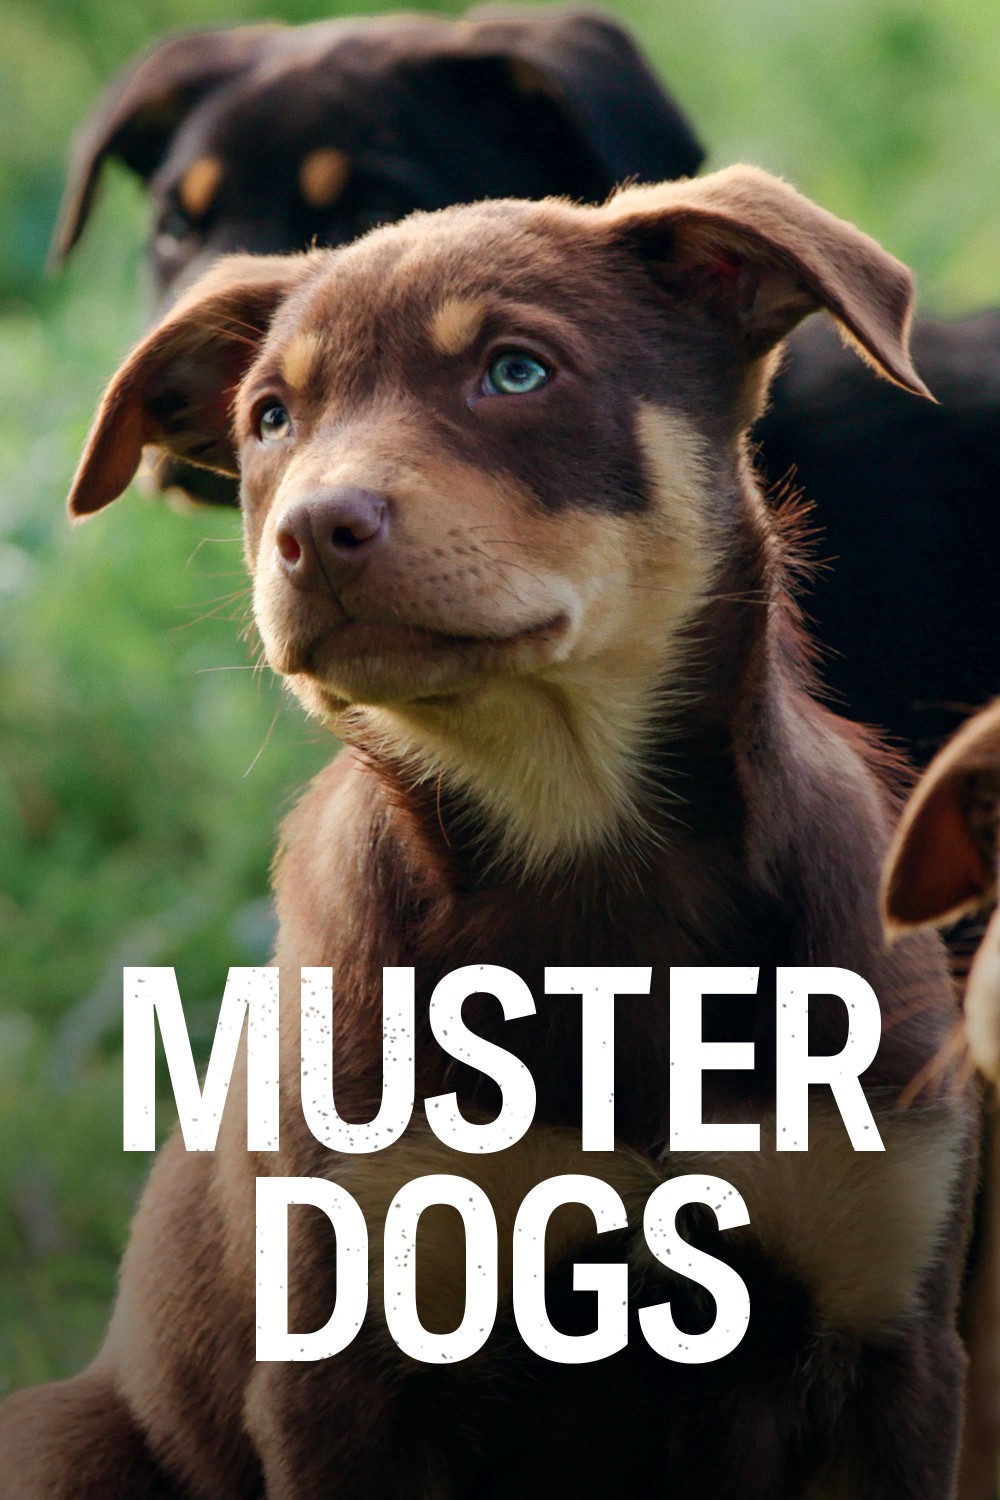 Muster Dogs S02E01 [1080p] (x265) A07b467d11944eb19659a6a2c24eb05e